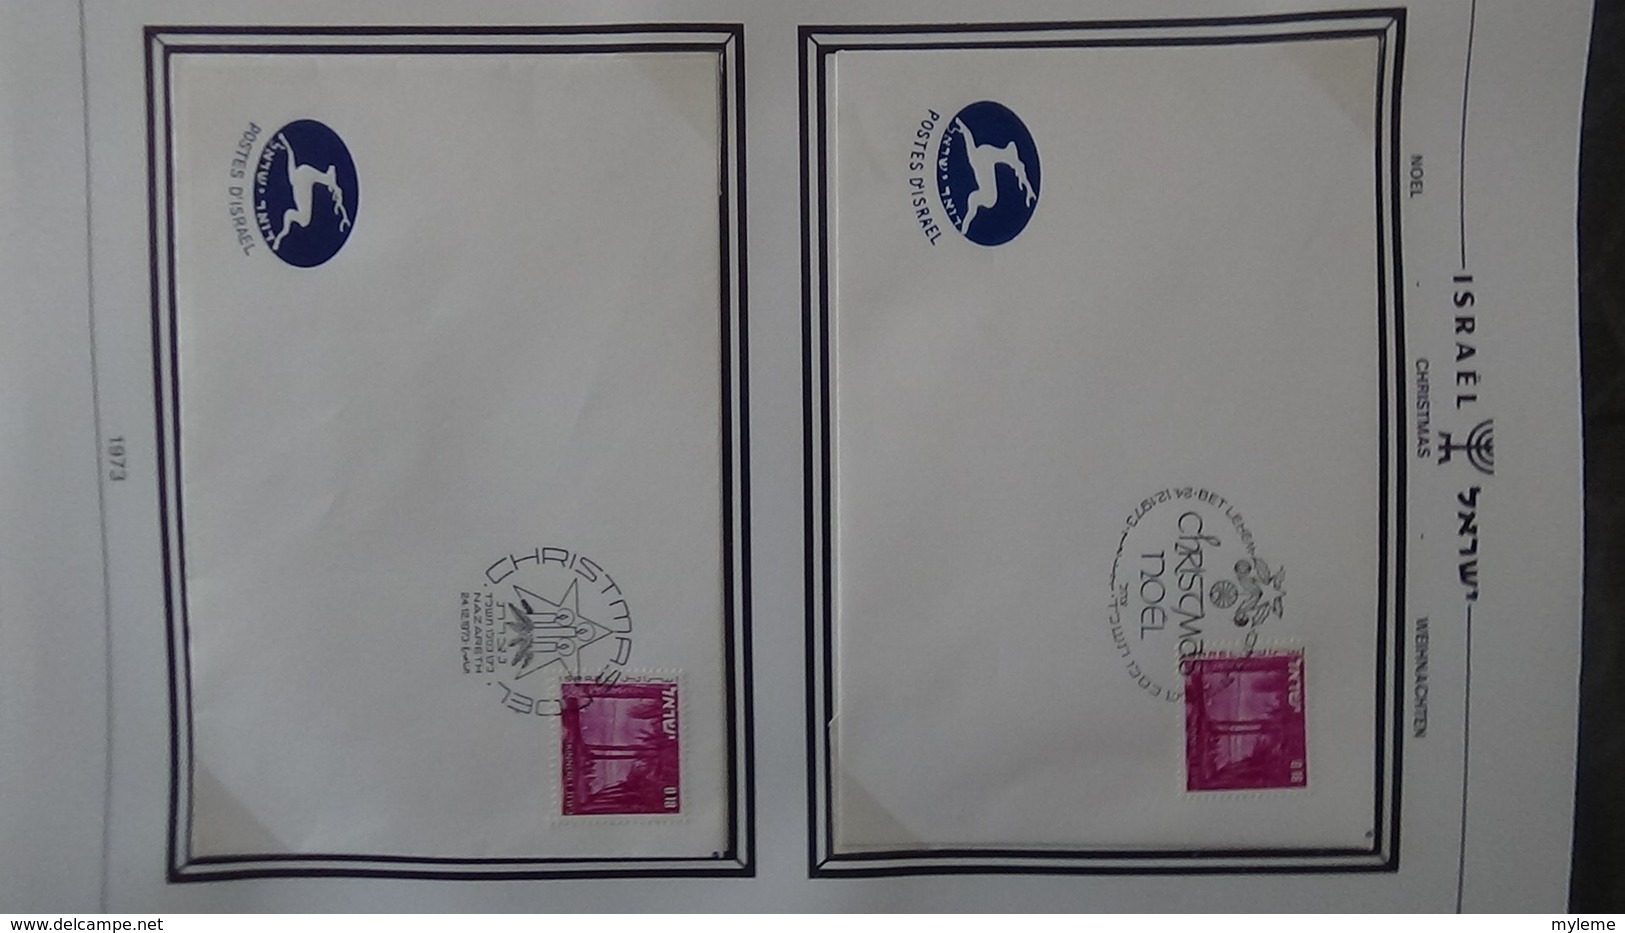 Très beau classeur SHEPS de 60 enveloppes de Noël d'Israël de 1968 à 2002. Villes différentes. A saisir  !!!